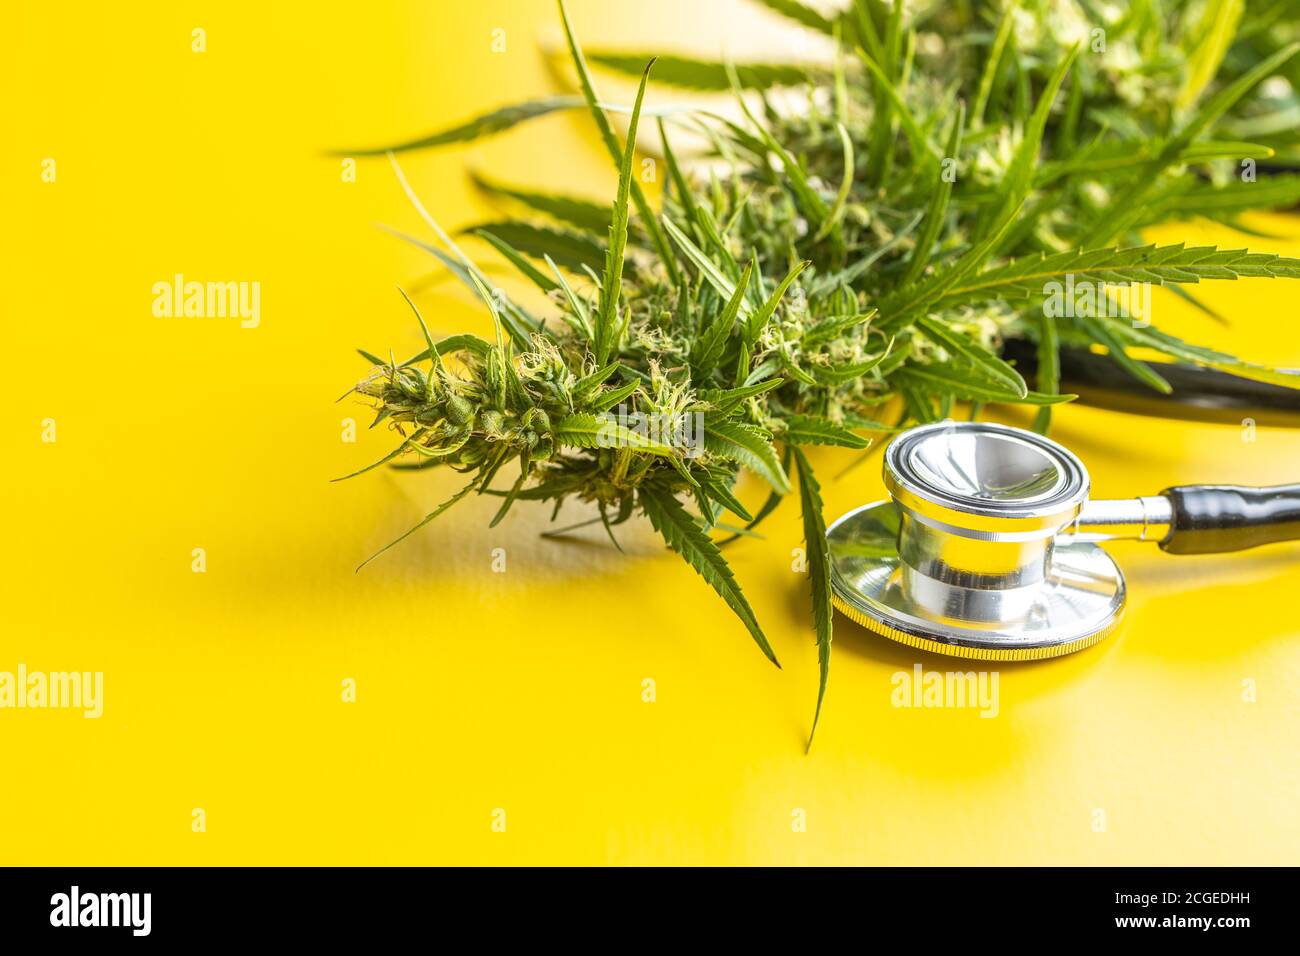 Fiori di germoglio di marijuana di cannabis e stetoscopio su sfondo giallo. Foto Stock